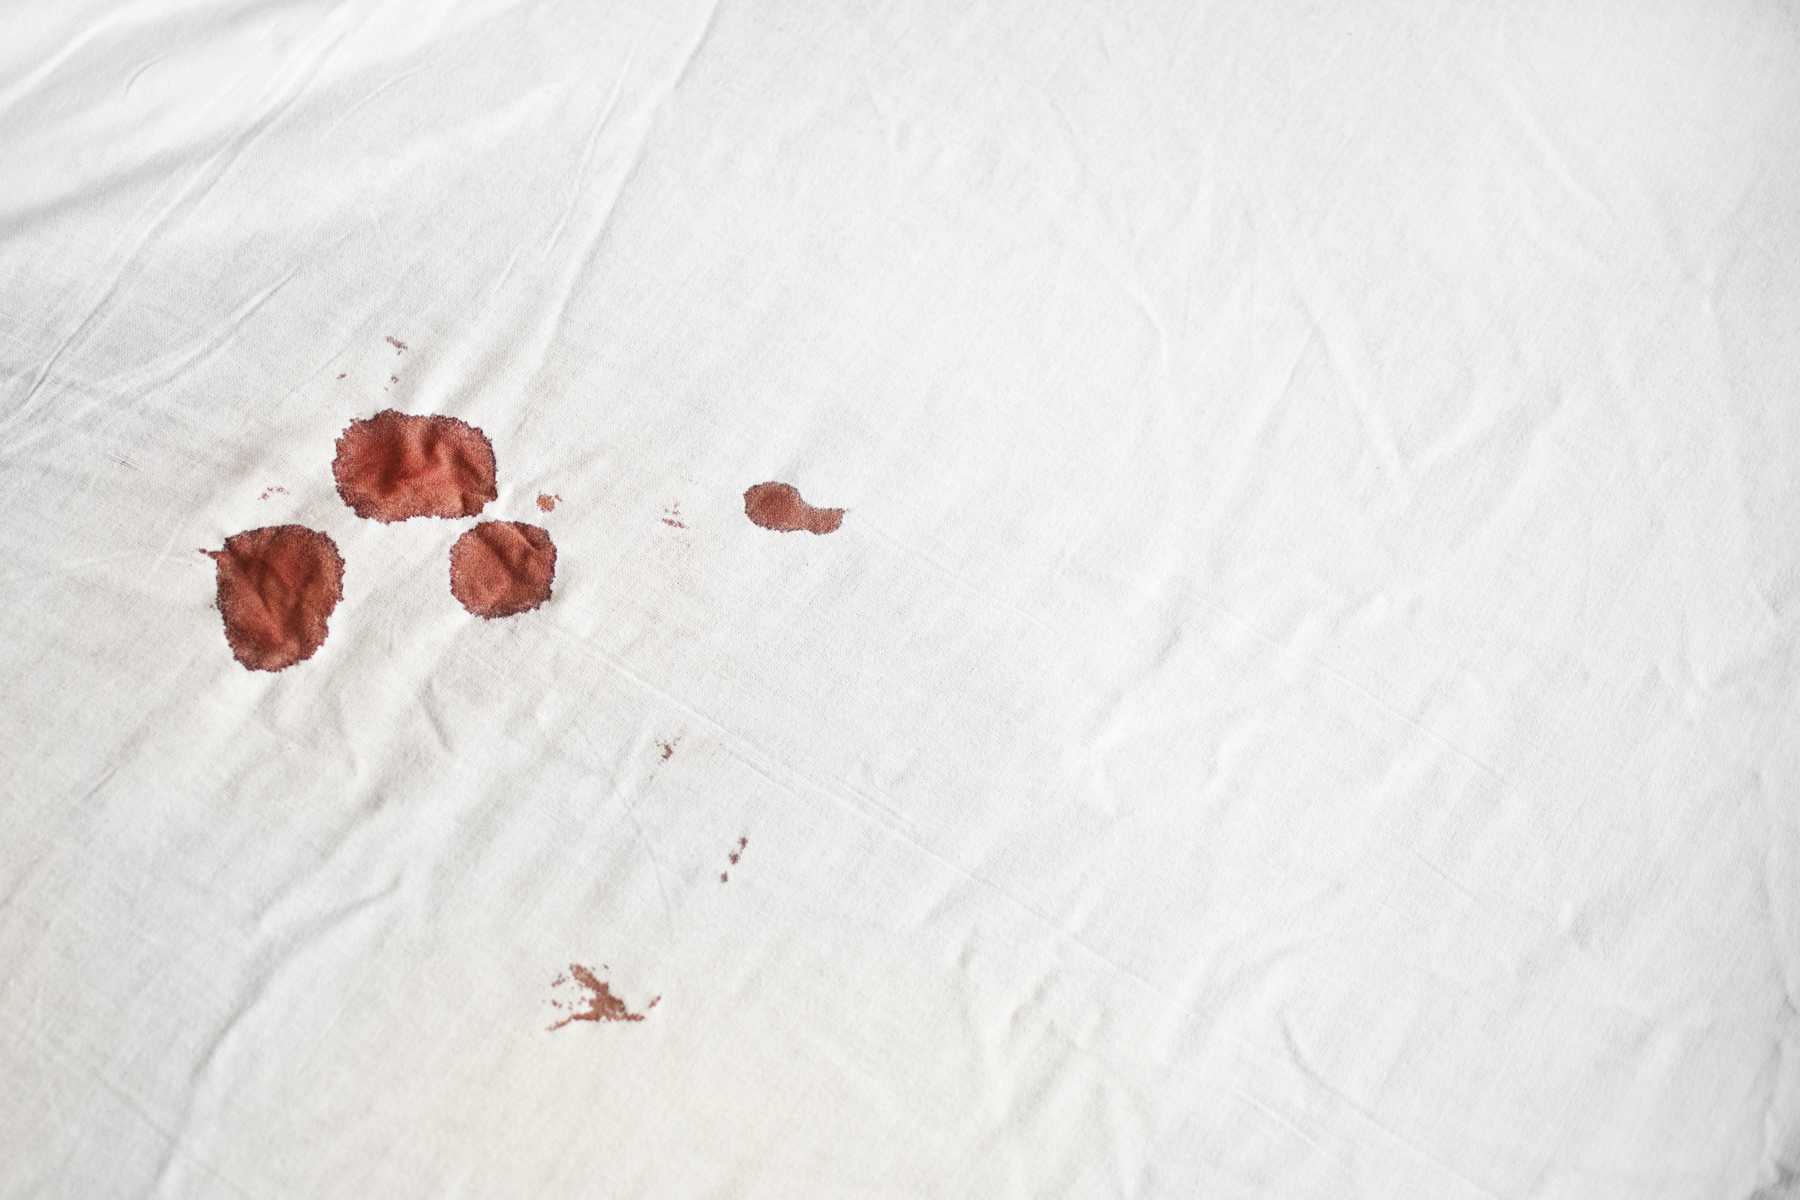 Útmutató: Hogyan távolítsuk el a vért az ágyneműből vagy lepedőkről?